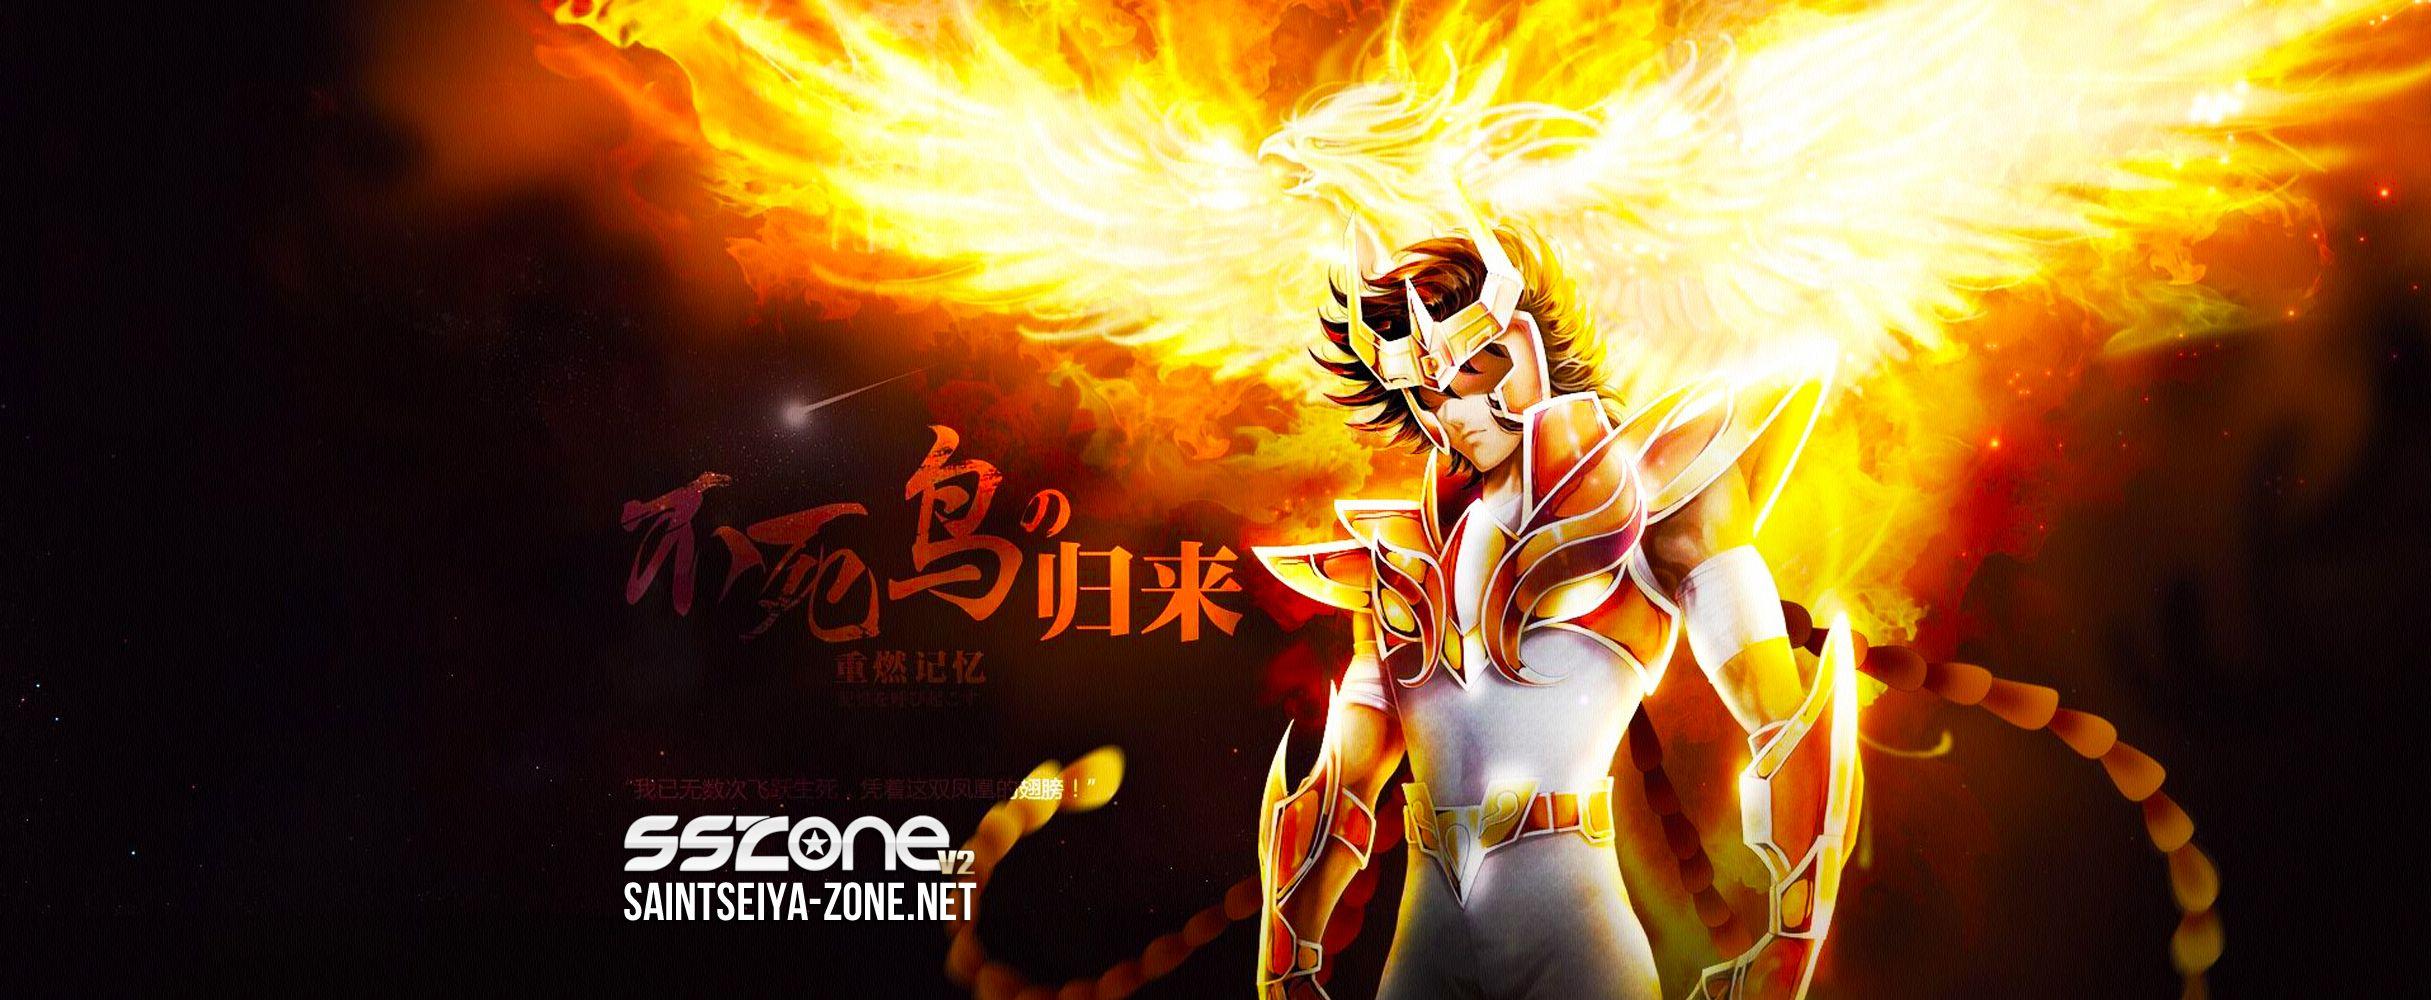 Phoenix Ikki Seiya. Anime Image Board